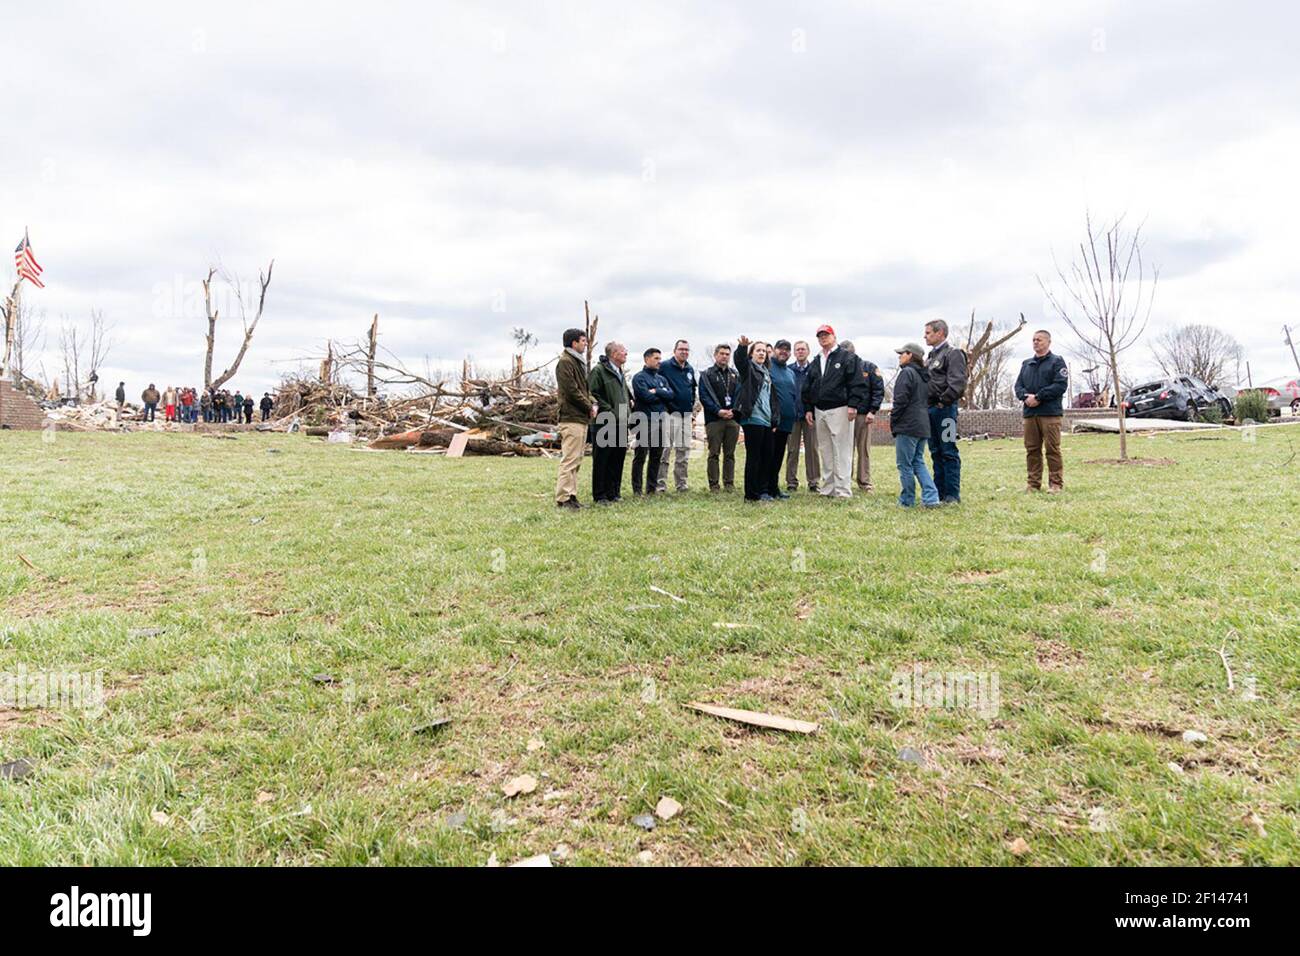 Le président Donald Trump rencontre des résidents du quartier ravagé par la tornade près de Cookeville, au Tennessee. Vendredi 6 2020 mars, où une tornade a frappé au début du mardi 3 mars, tuant 18 des 24 personnes tuées dans le centre du Tennessee. Banque D'Images